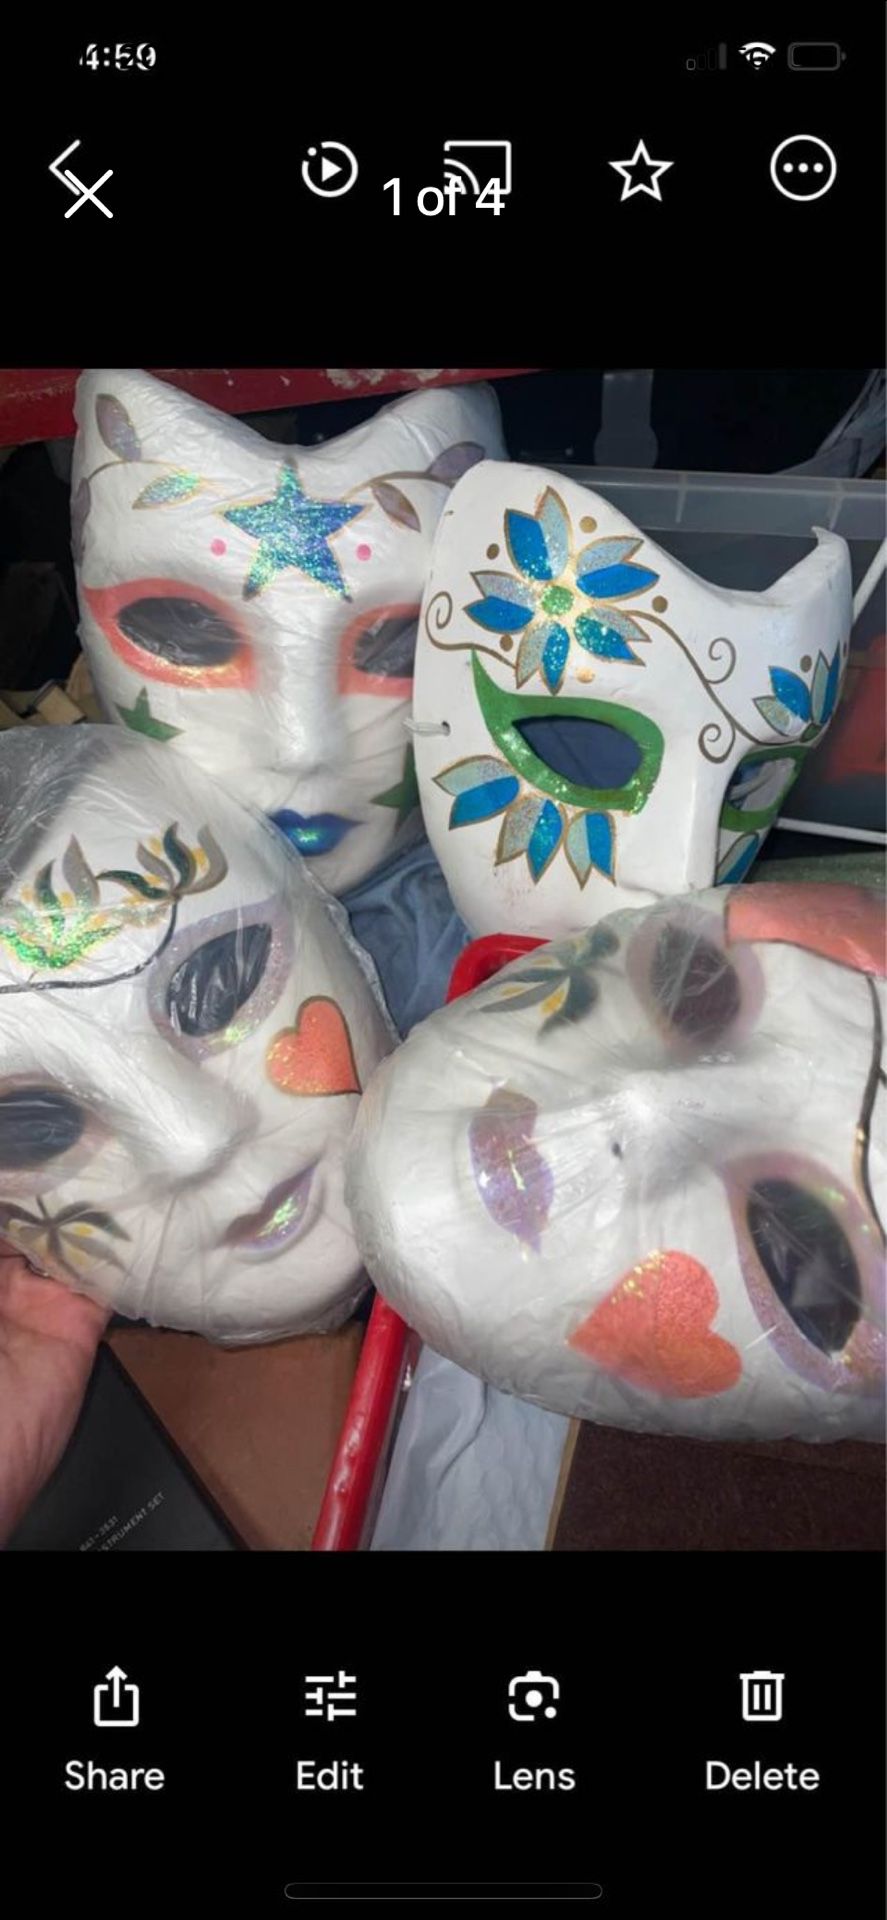 White Ceramic Decorative Mask Multicolor